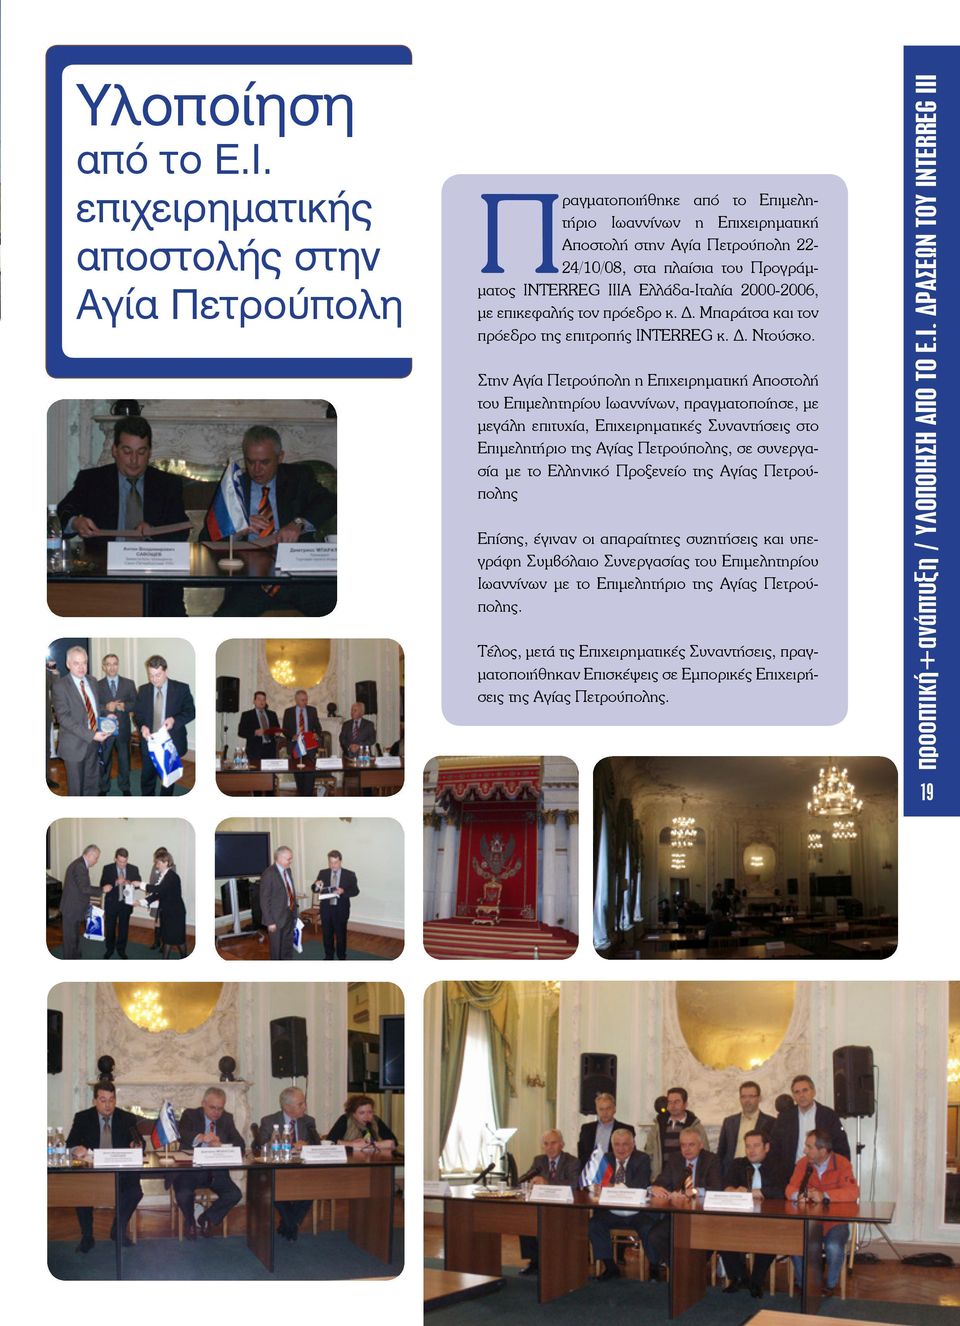 Ελλάδα-Ιταλία 2000-2006, με επικεφαλής τον πρόεδρο κ. Δ. Μπαράτσα και τον πρόεδρο της επιτροπής INTERREG κ. Δ. Ντούσκο.